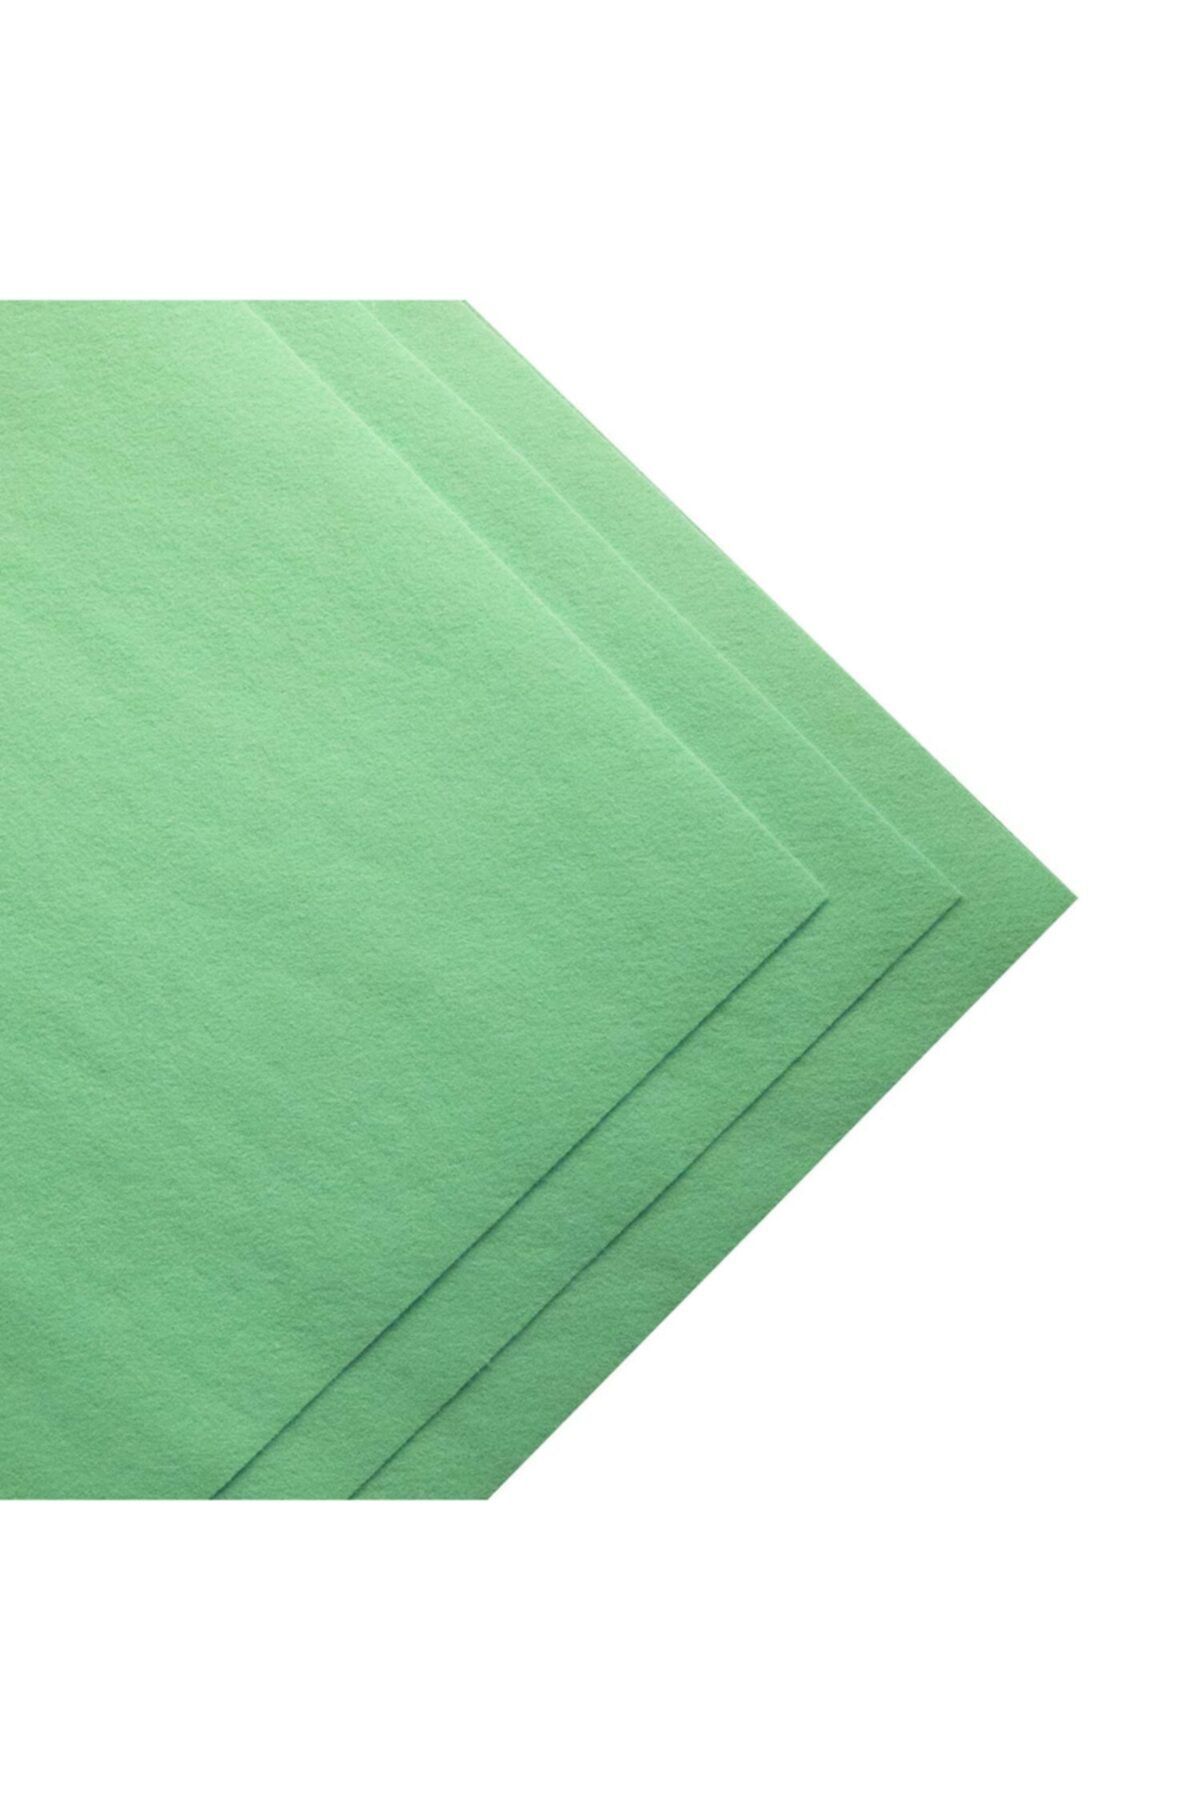 toptankece Mint Yeşili Ince Keçe 1 mm Kalınlığında 25 x 25 cm Ölçülerinde, Hobi Keçe